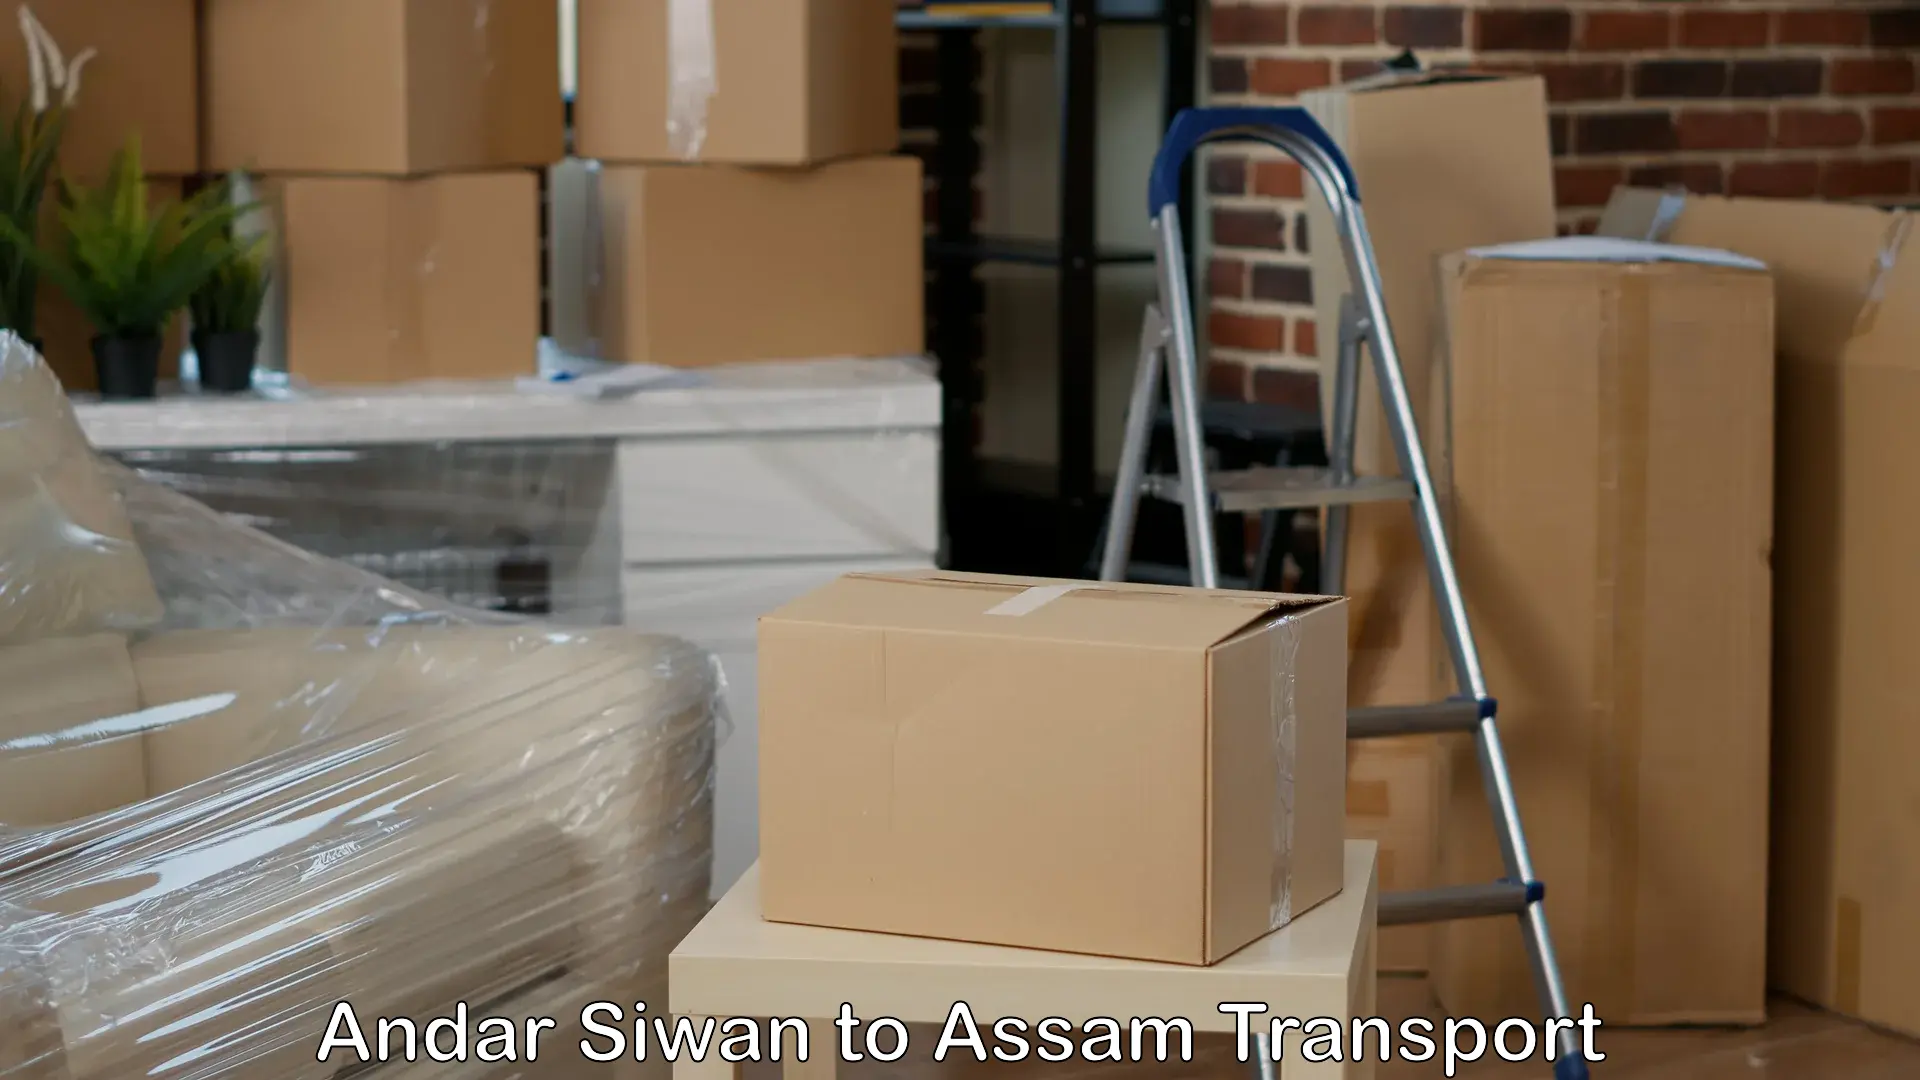 Shipping partner Andar Siwan to Thelamara